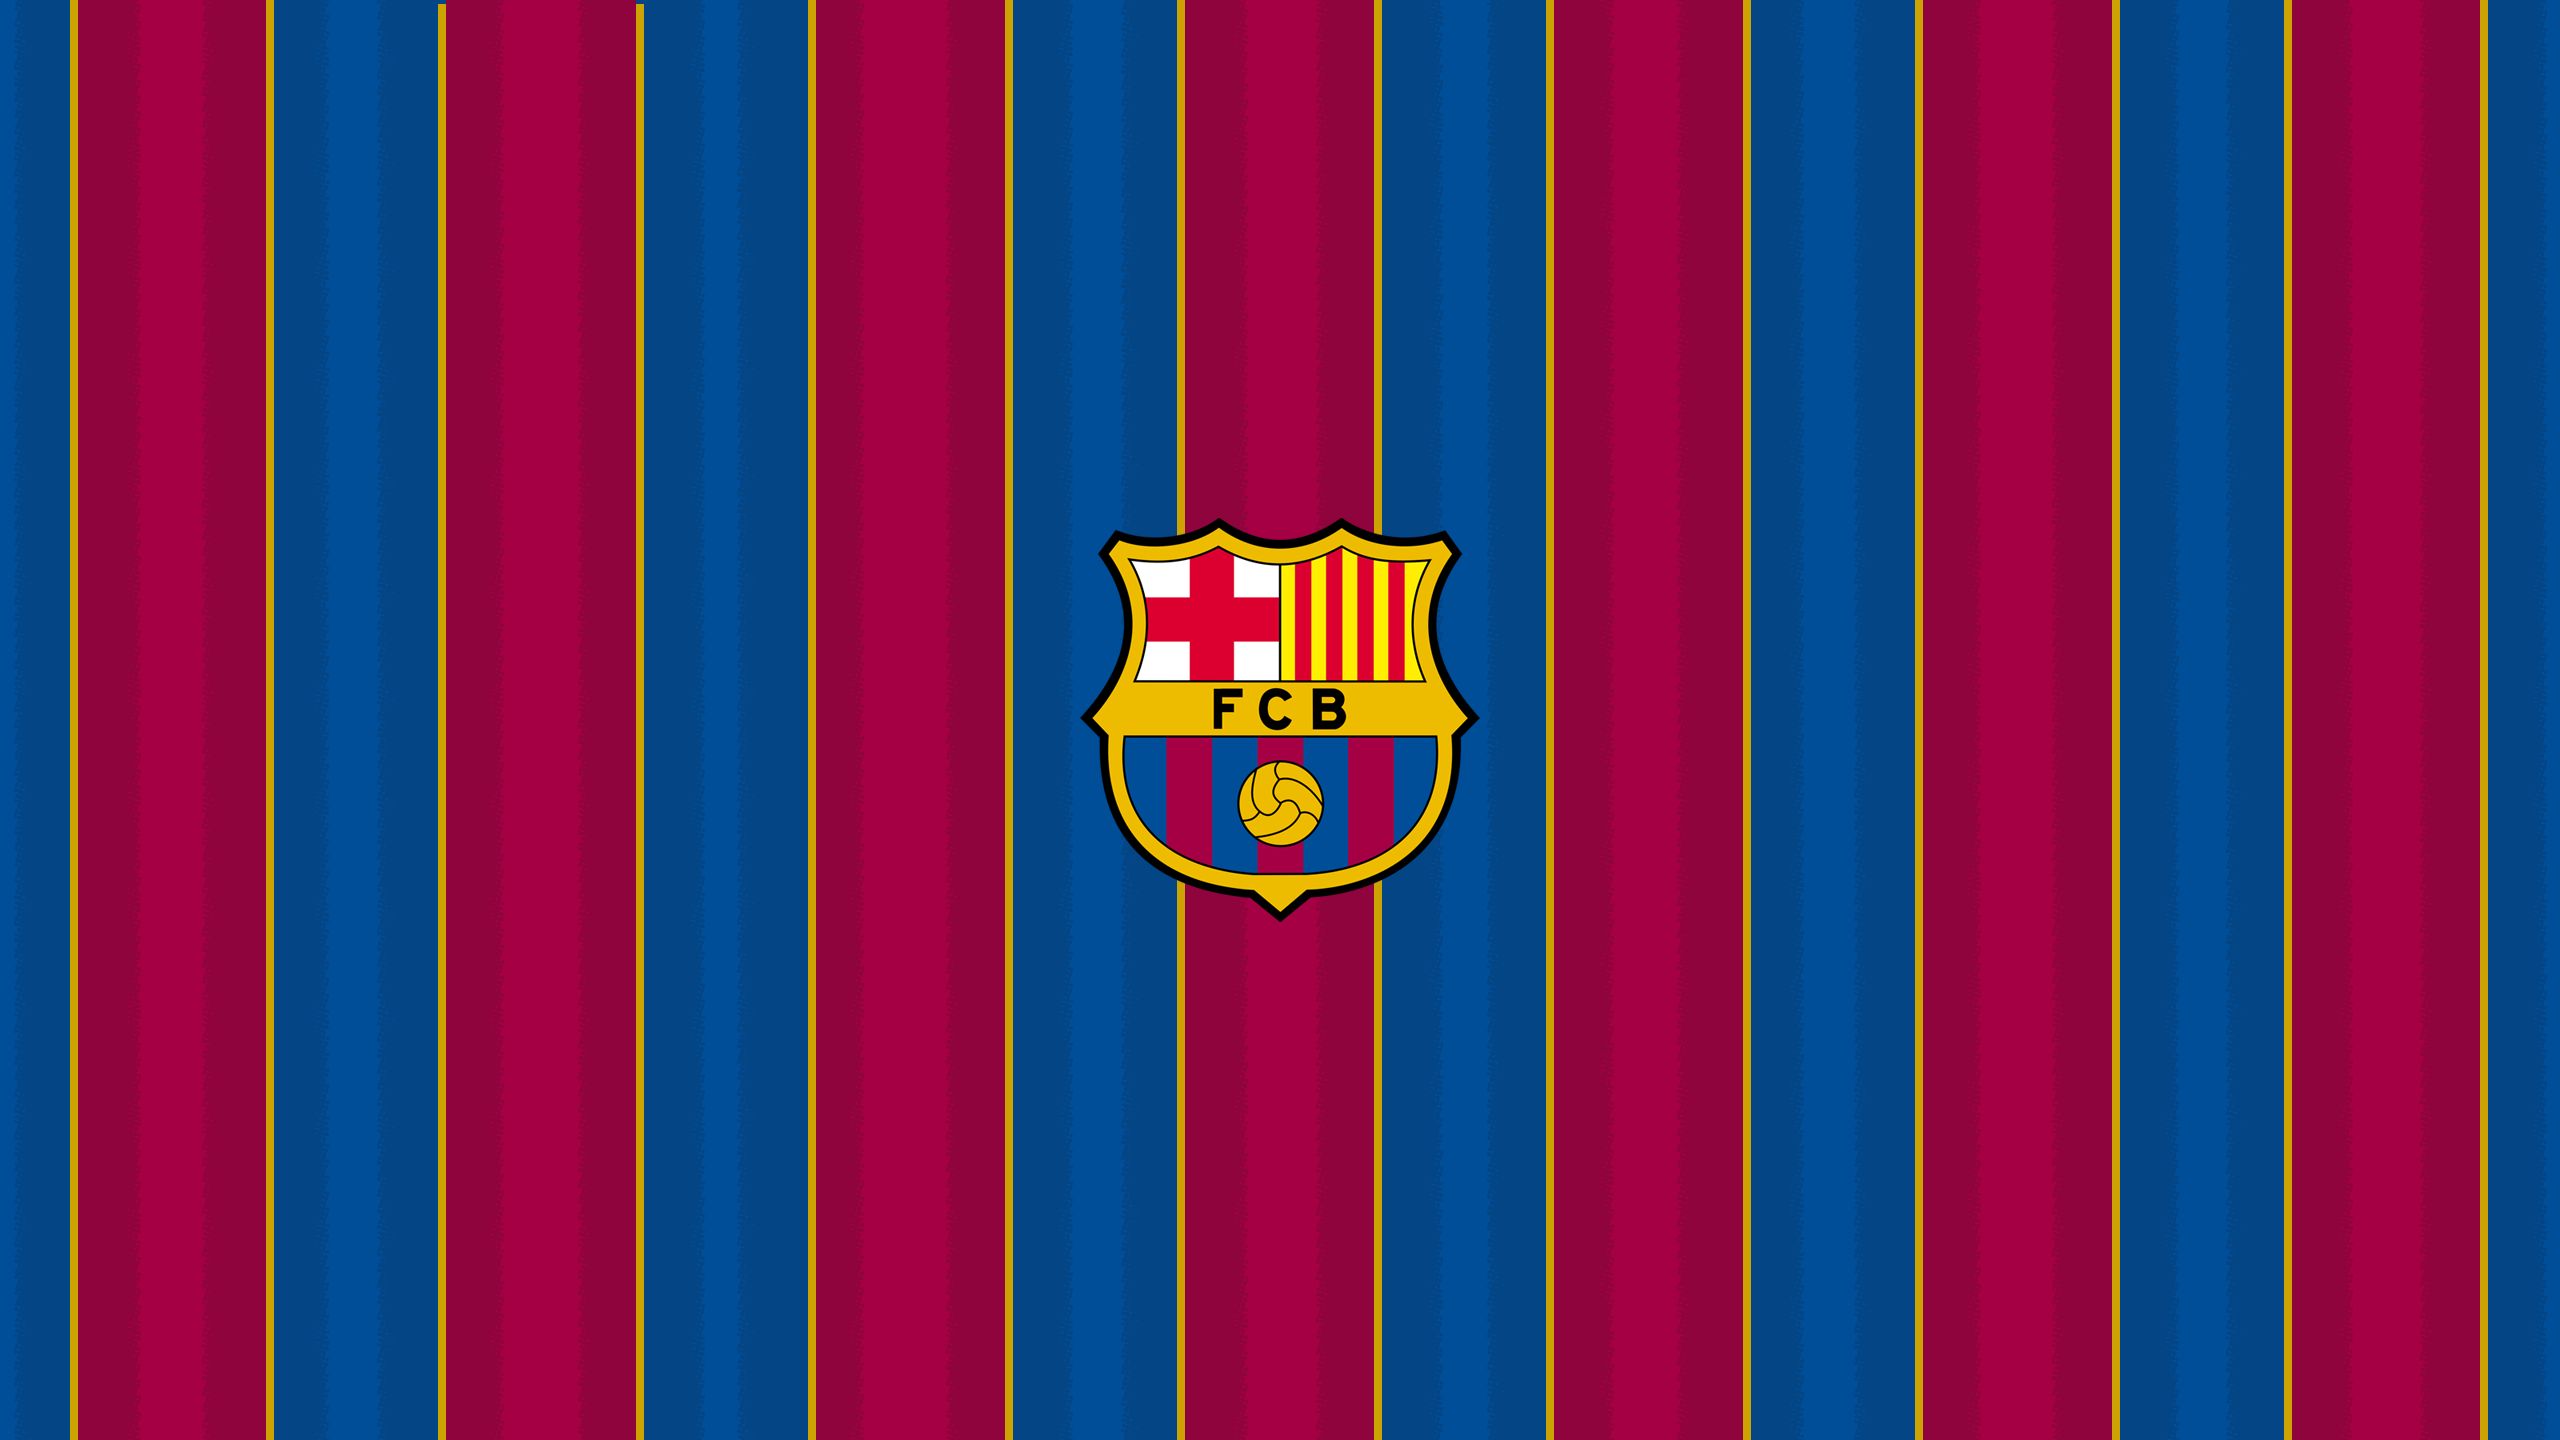 fc barcelona, symbol, sports, crest, emblem, logo, soccer